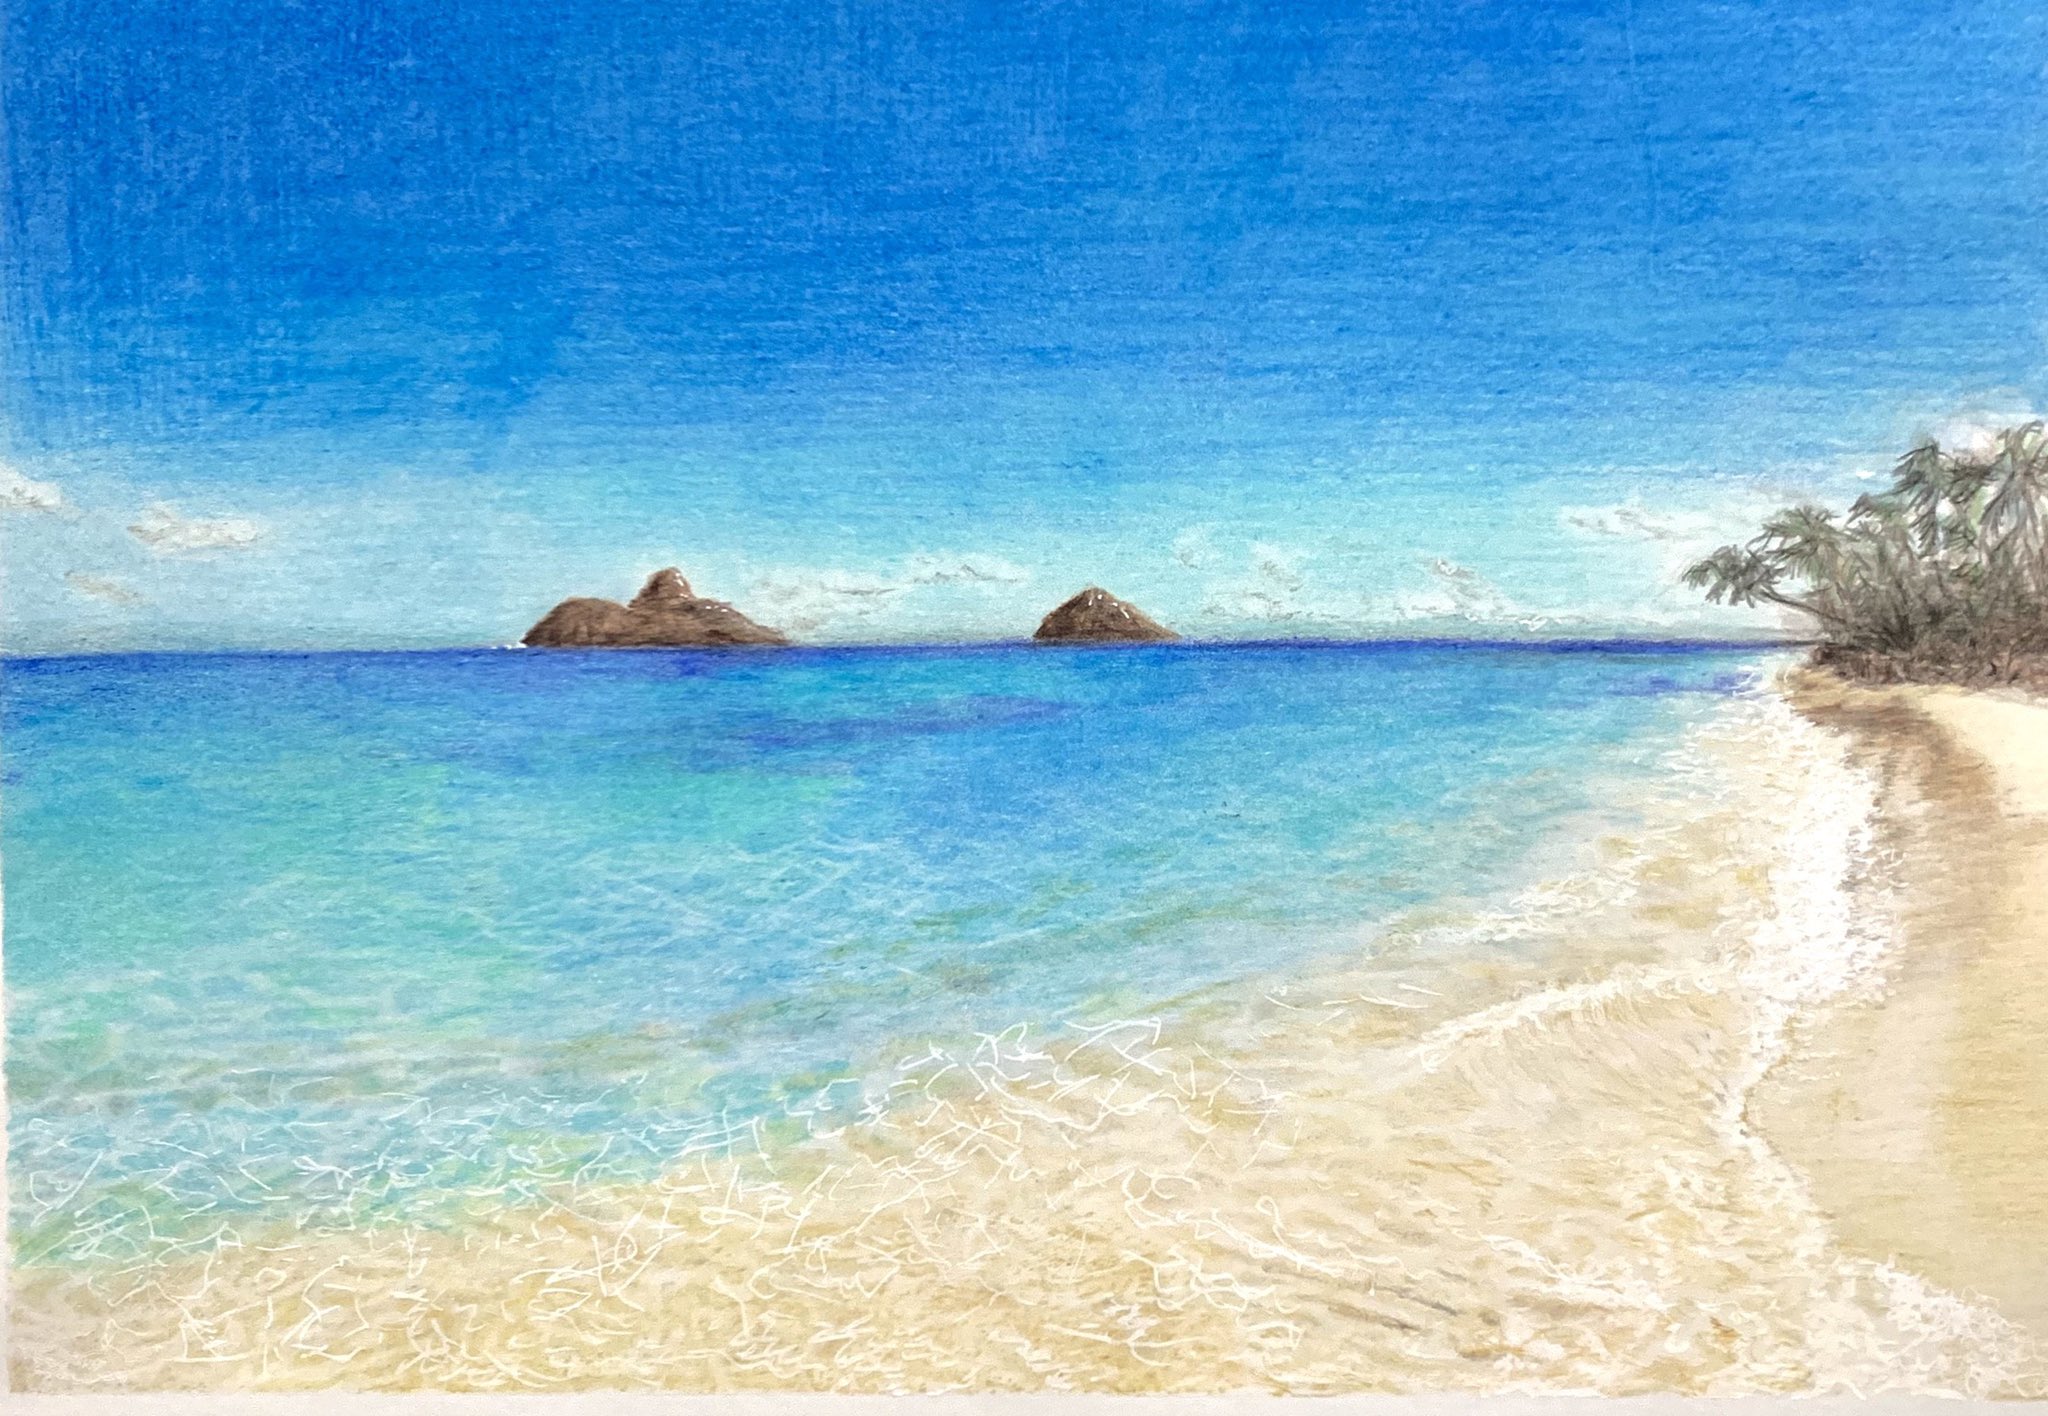 Twitter এ いとしん 空がヘタ過ぎて 泣 色鉛筆 色鉛筆画 風景 アナログイラスト ビーチ Hawaii Kailua 海 波 T Co Fj2lqifm9c ট ইট র